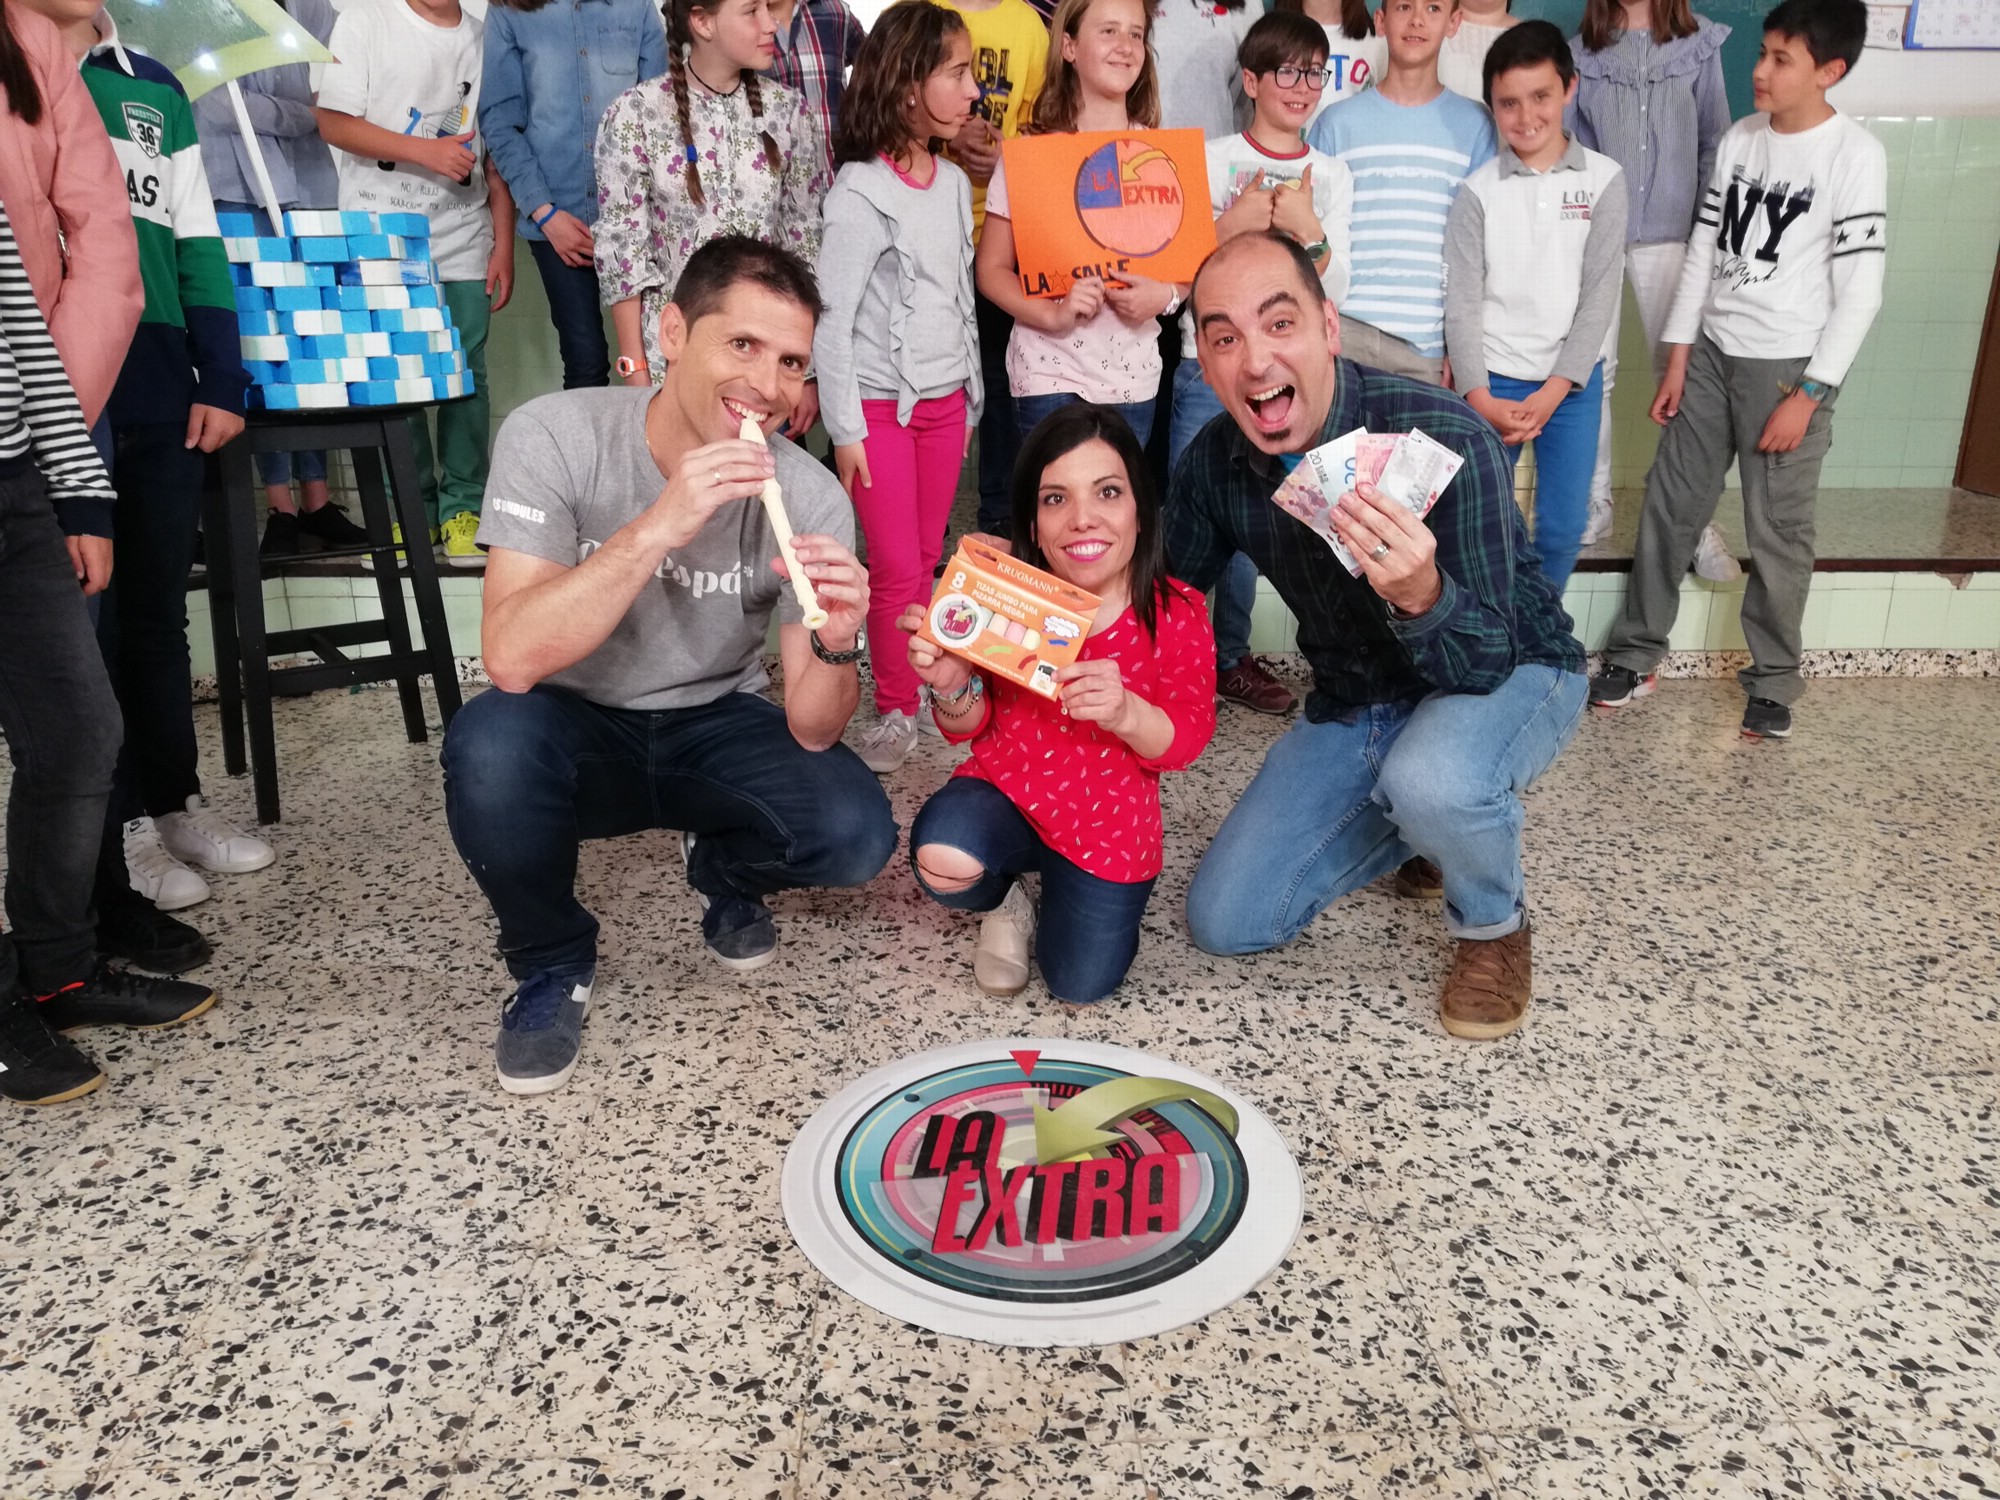 Los profes Pedro, Iván y Elena concursan en el programa de TV “La extra”